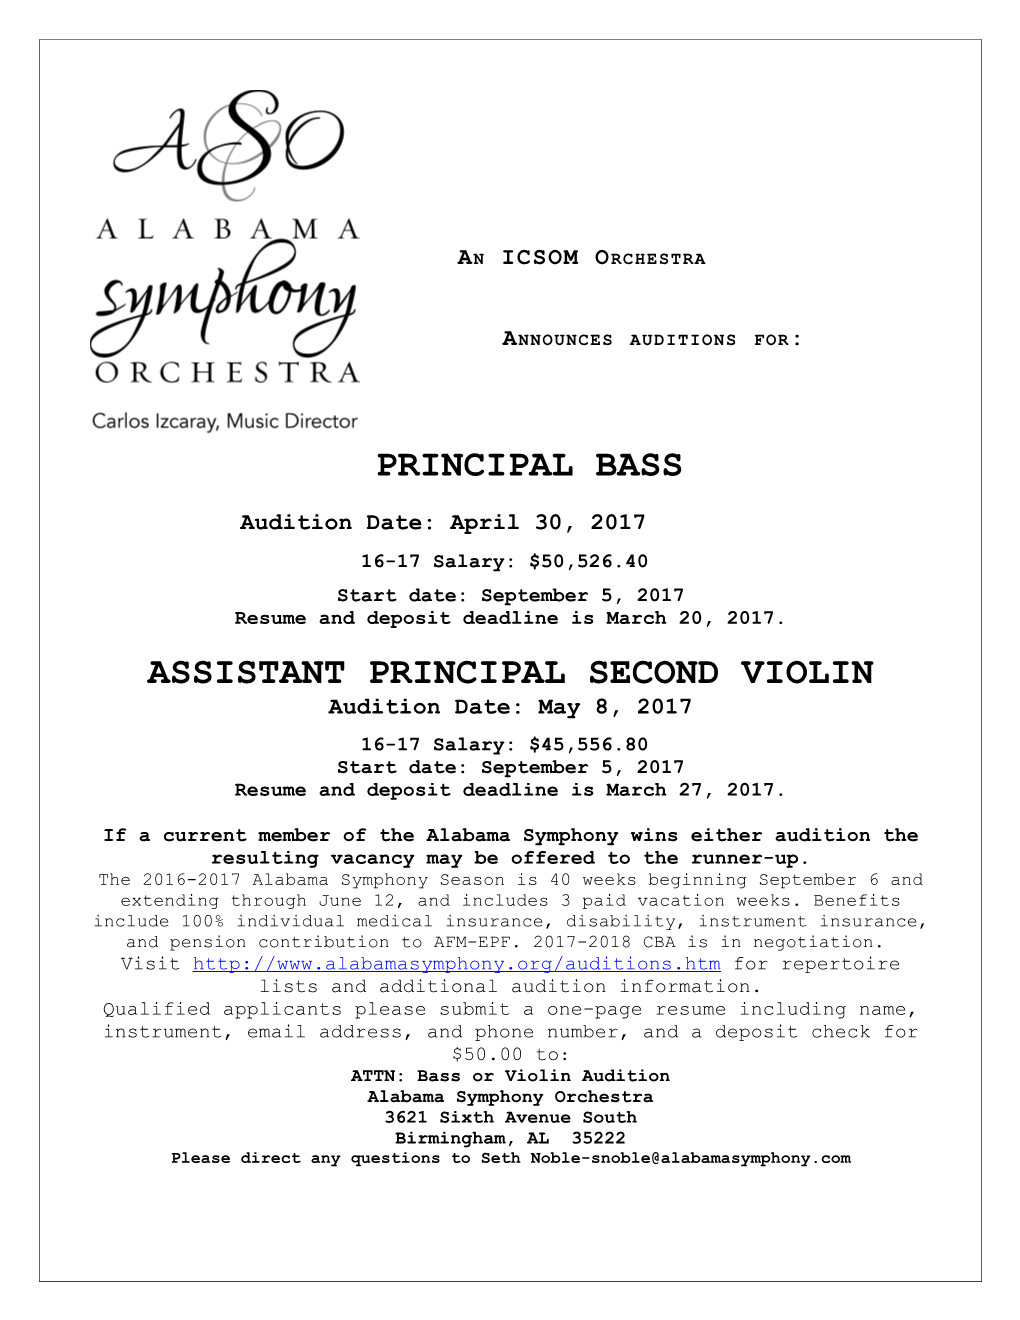 The Alabama Symphony Orchestra